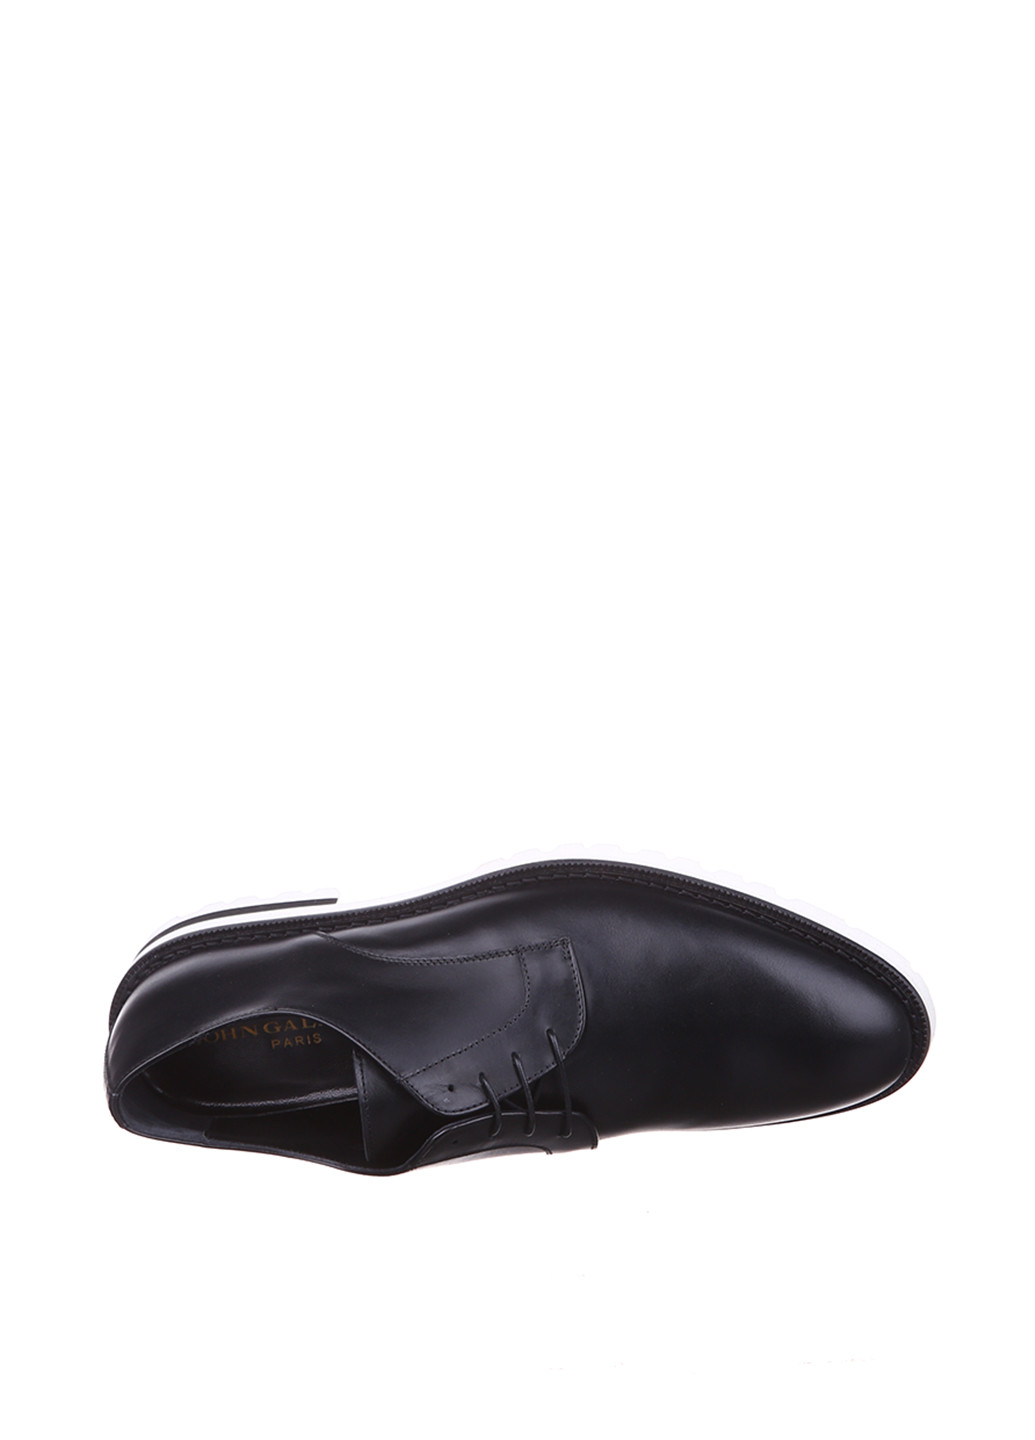 Черные кэжуал туфли John Galliano на шнурках